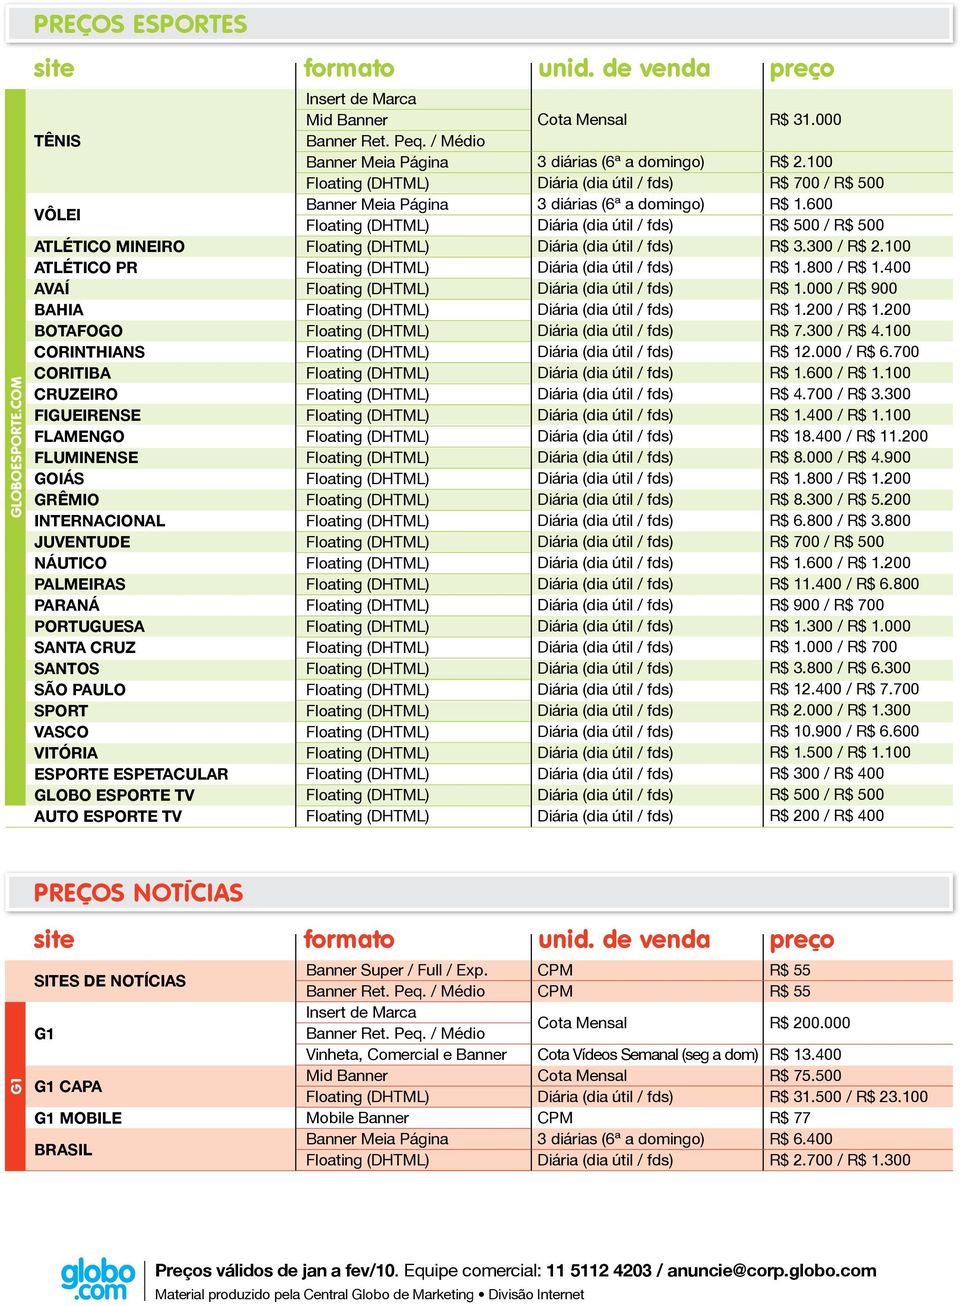 Paraná Portuguesa Santa Cruz Santos São Paulo Sport Vasco Vitória Esporte Espetacular Globo Esporte TV Auto Esporte TV R$ 31.000 R$ 2.100 R$ 700 / 0 R$ 1.0 0 / 0 R$ 3.300 / R$ 2.100 R$ 1.800 / R$ 1.